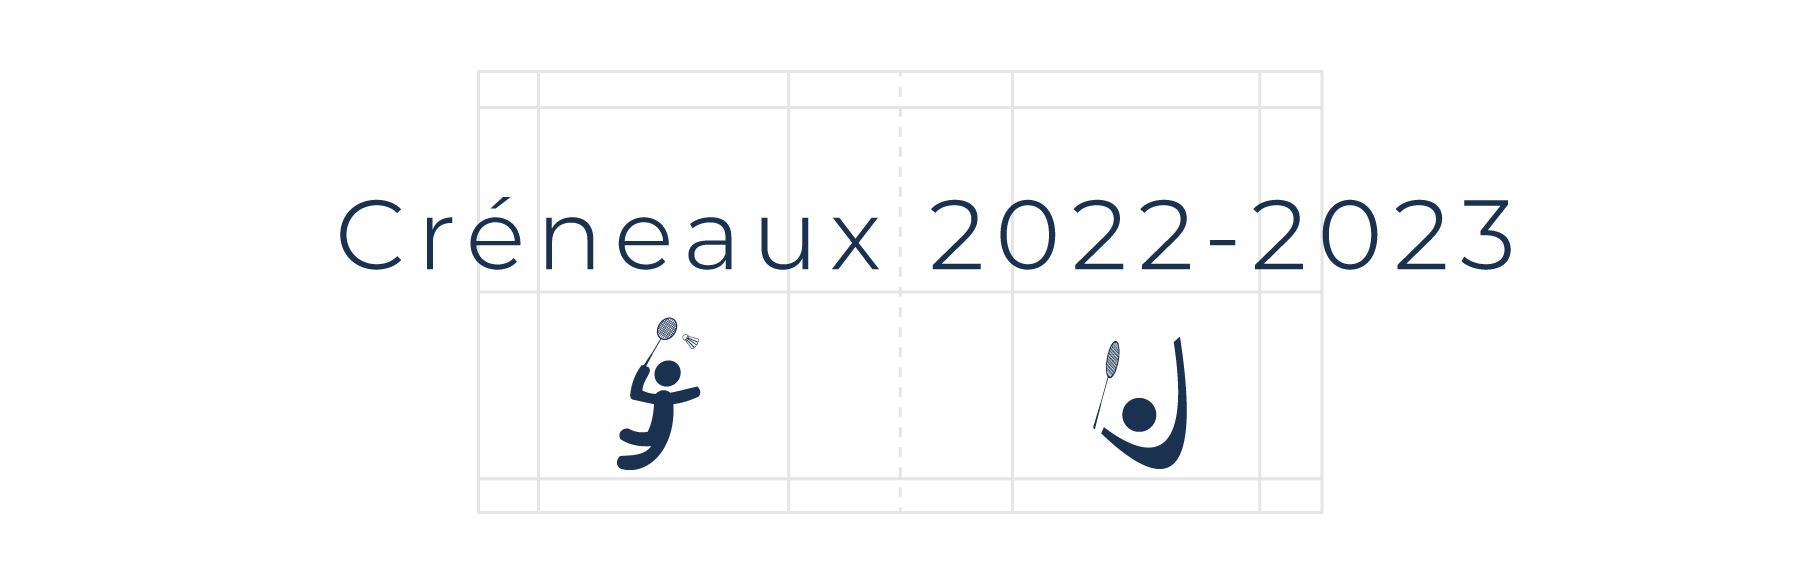 header-creneaux-2022-2023